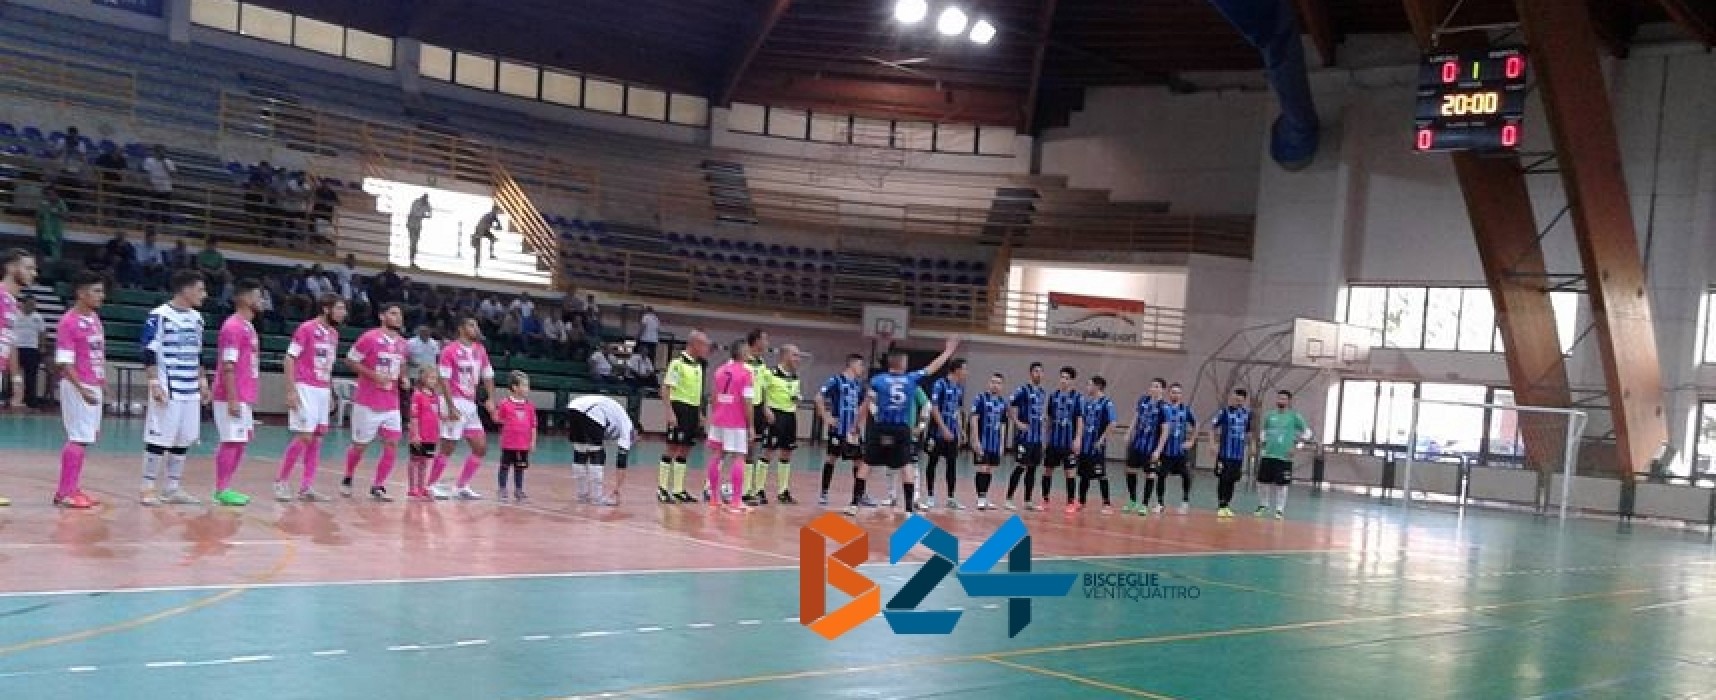 Futsal Bisceglie, grande esordio in campionato. Salinis sconfitta 5-3